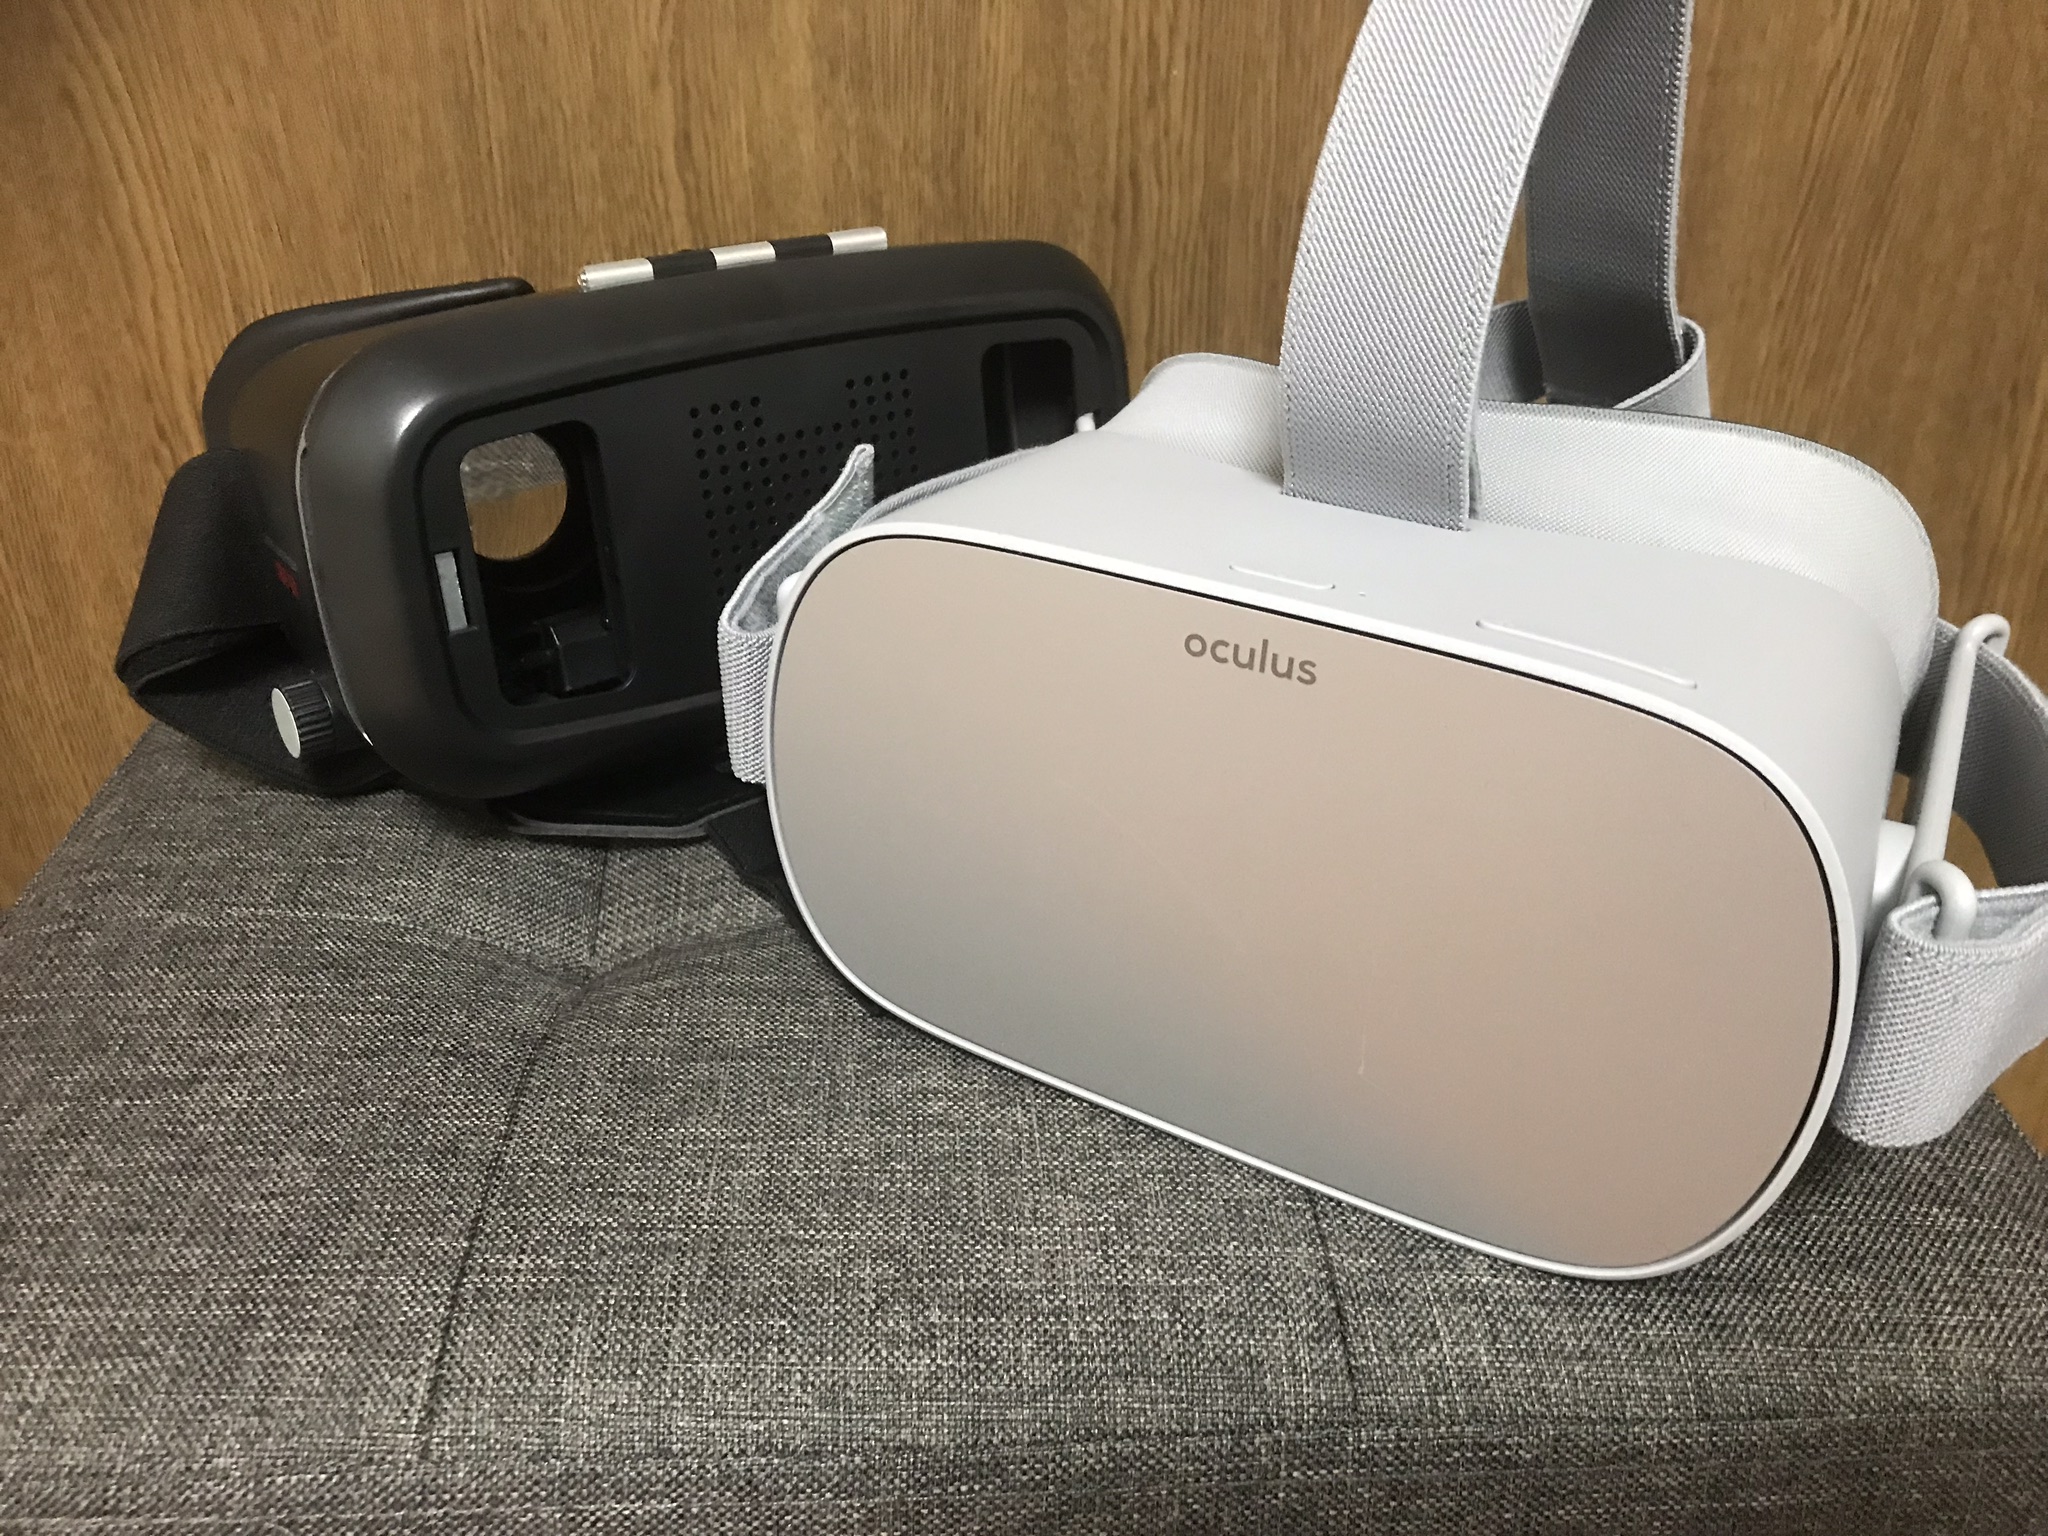 OculusGoとスマホVRゴーグル 動画の見やすさを比較、買う価値はあるか